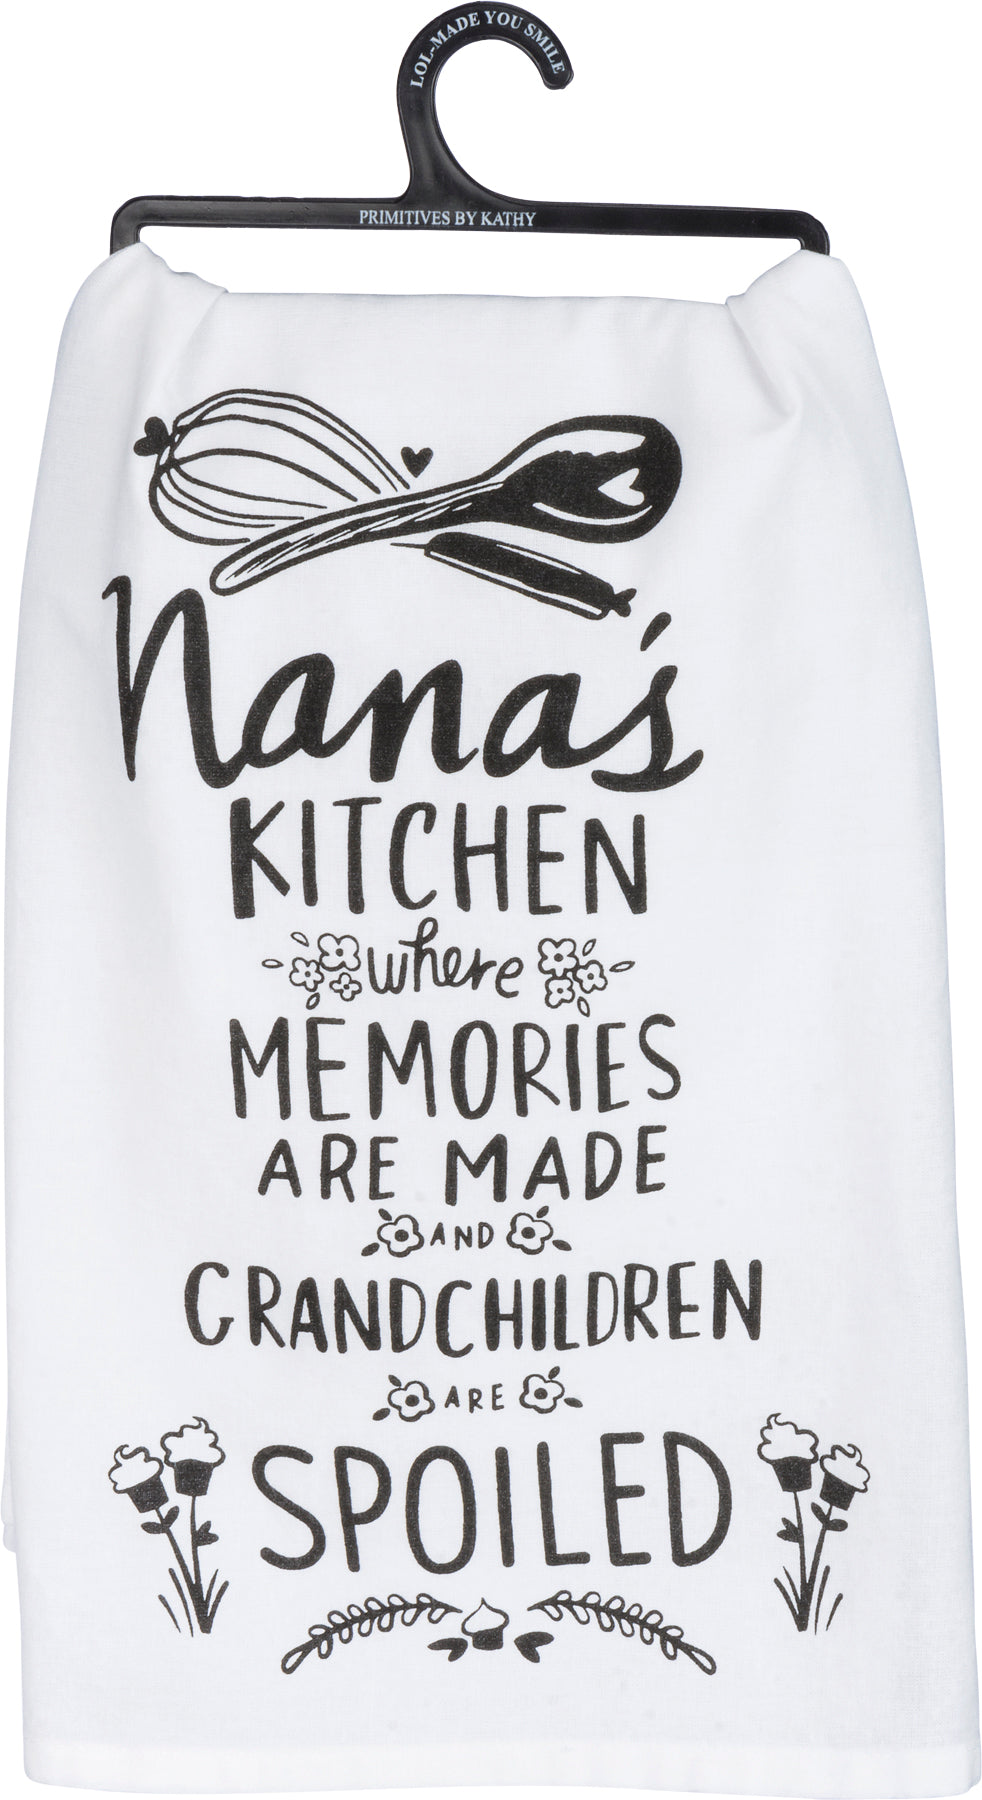 Nana’s Kitchen Dish Towel